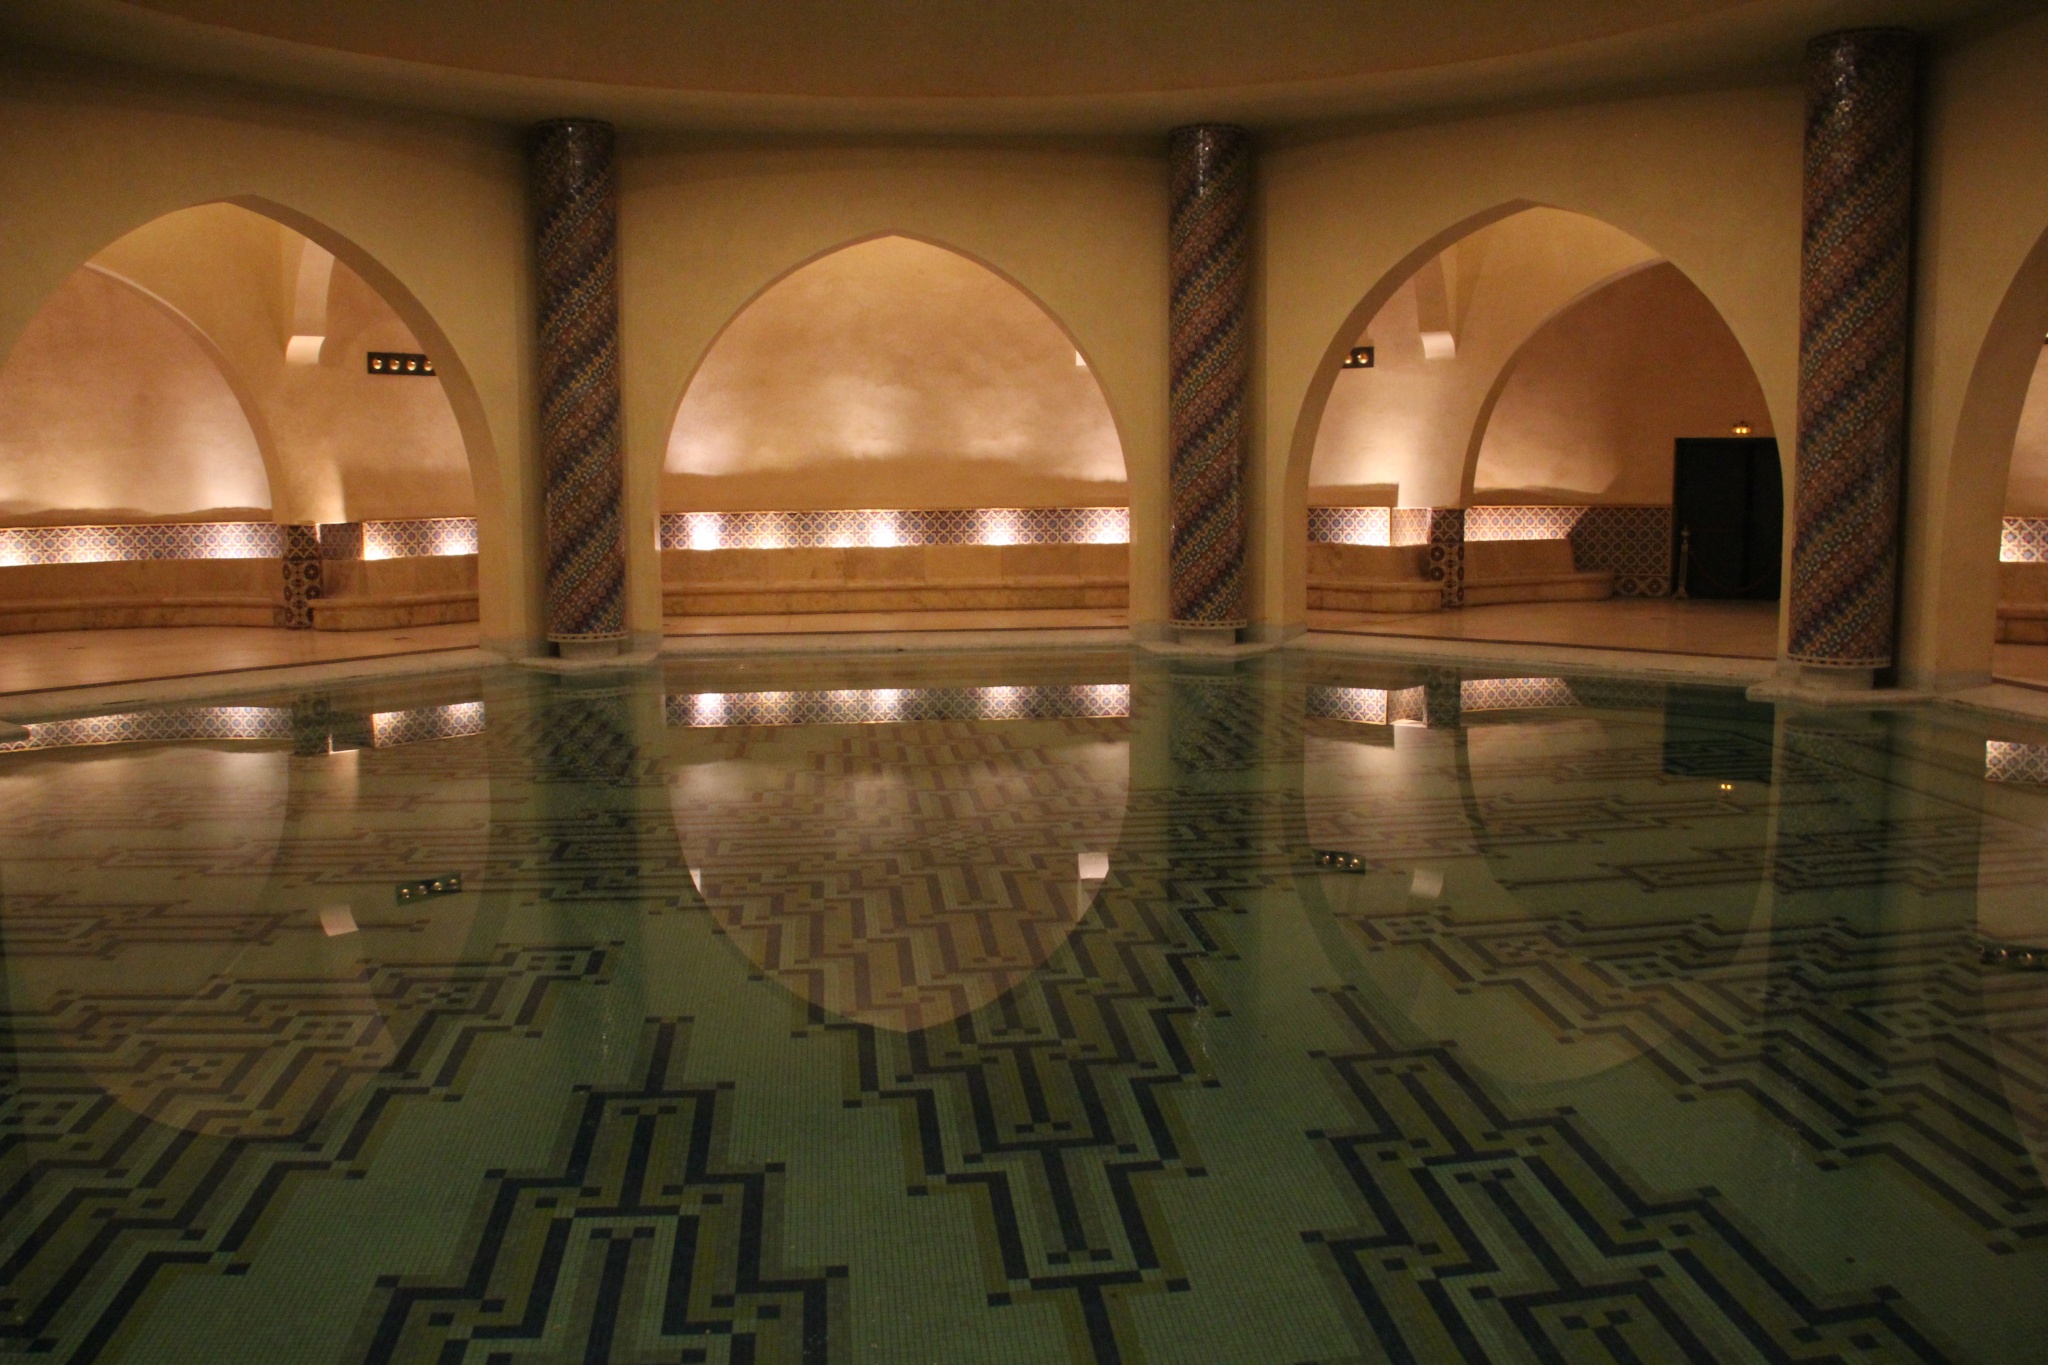 King Hassan II Mosque baths